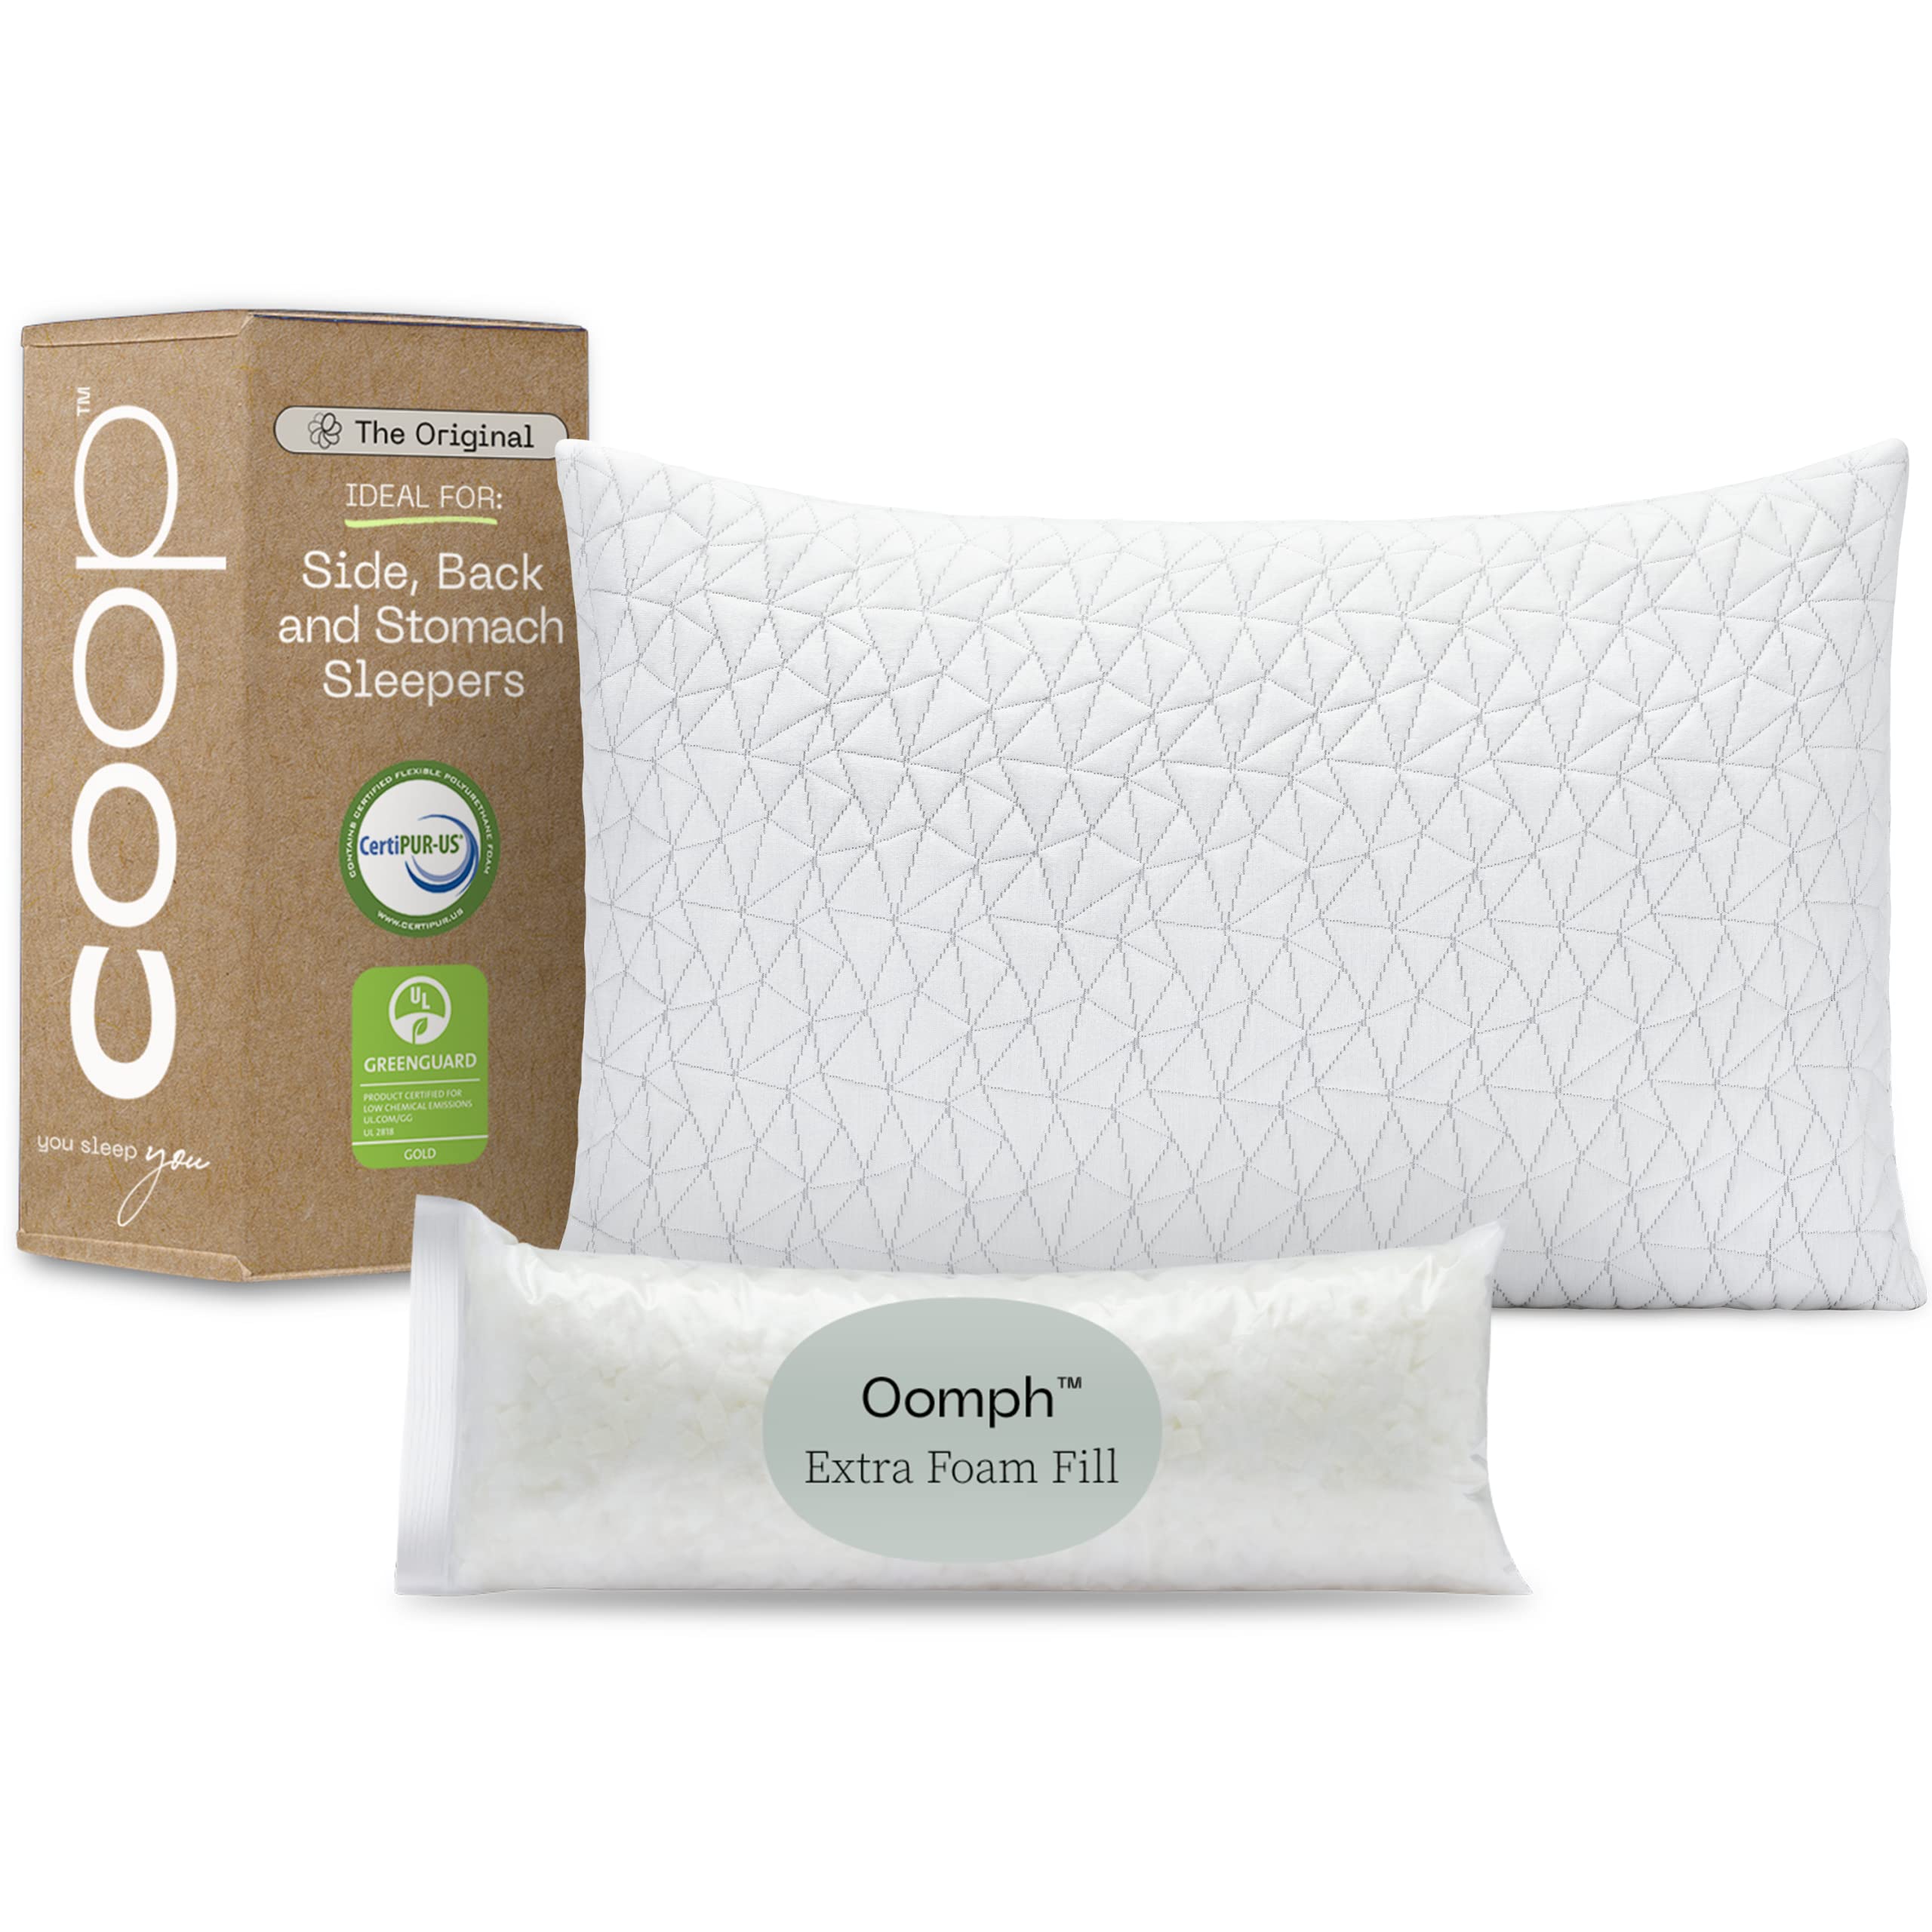 Coop Home Goods Original Loft Bed Pillows for Sleeping - Adjustable Cross Cut Memory Foam Pillows - Medium Firm Back, Stomach and Side Sleeper Pillow